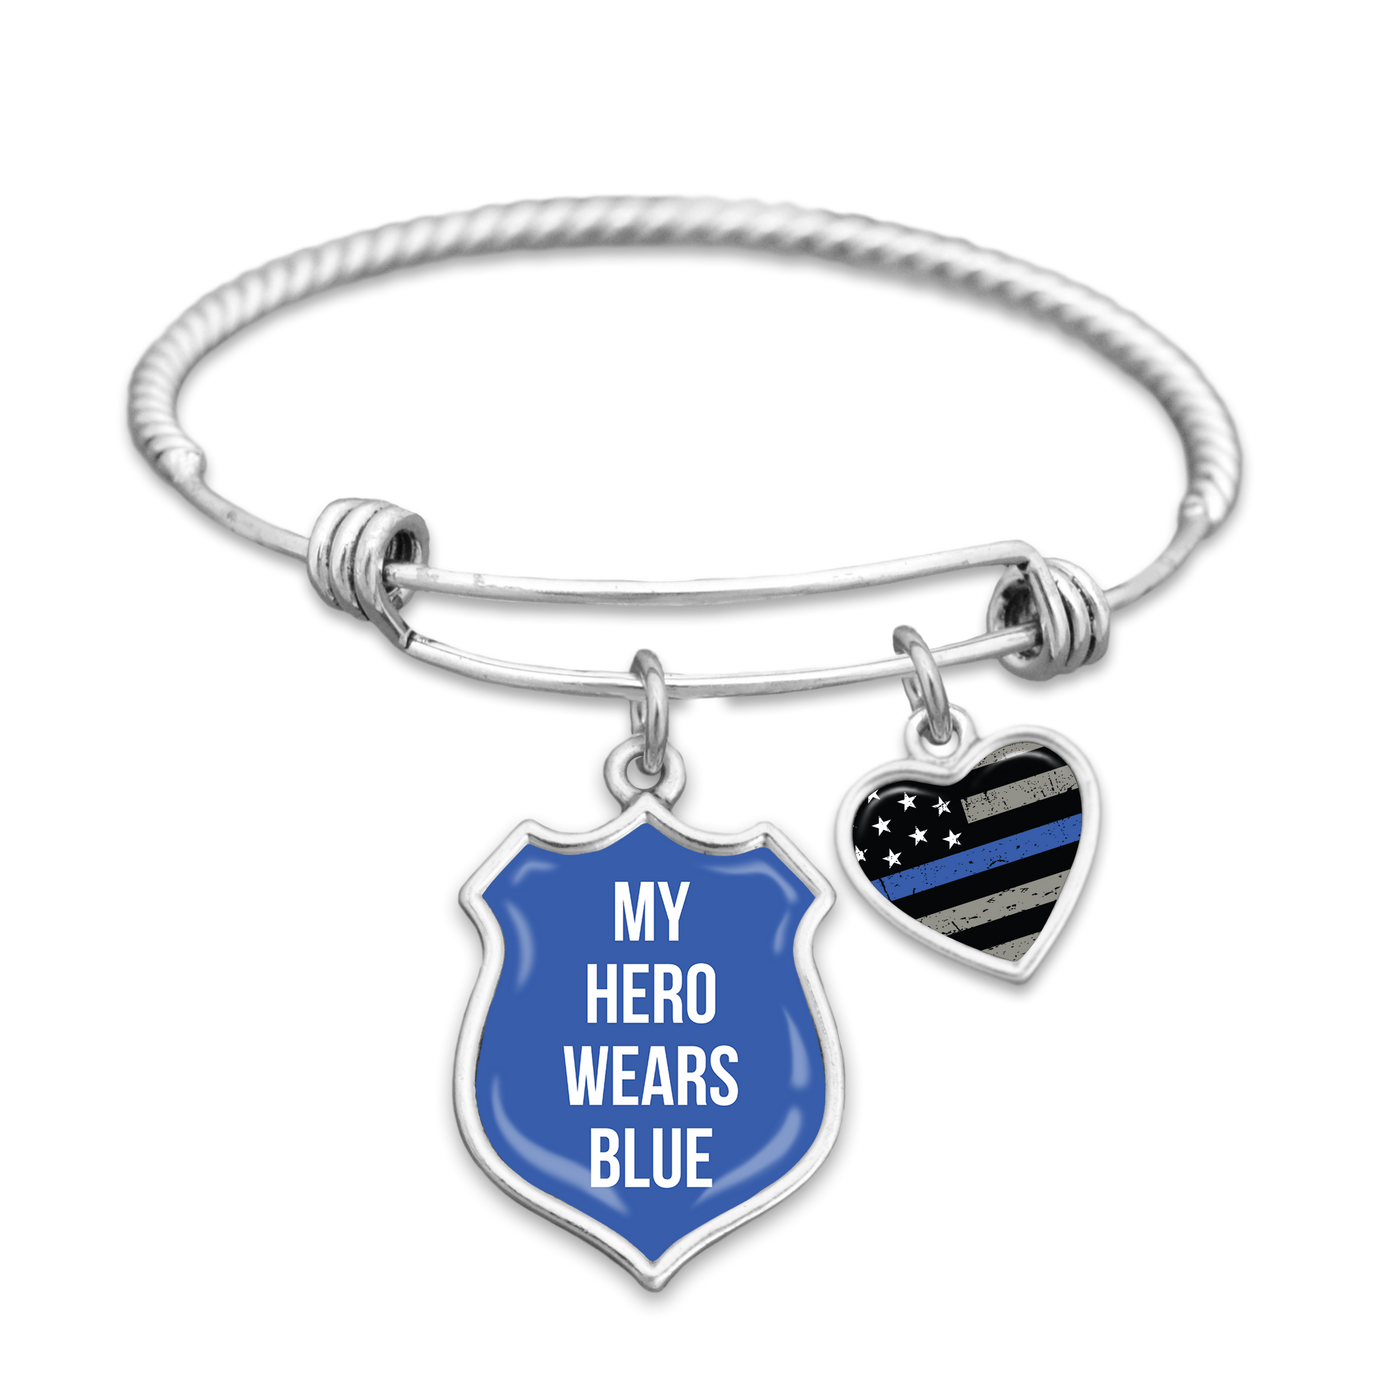 My Hero Wears Blue Thin Blue Line Charm Bracelet